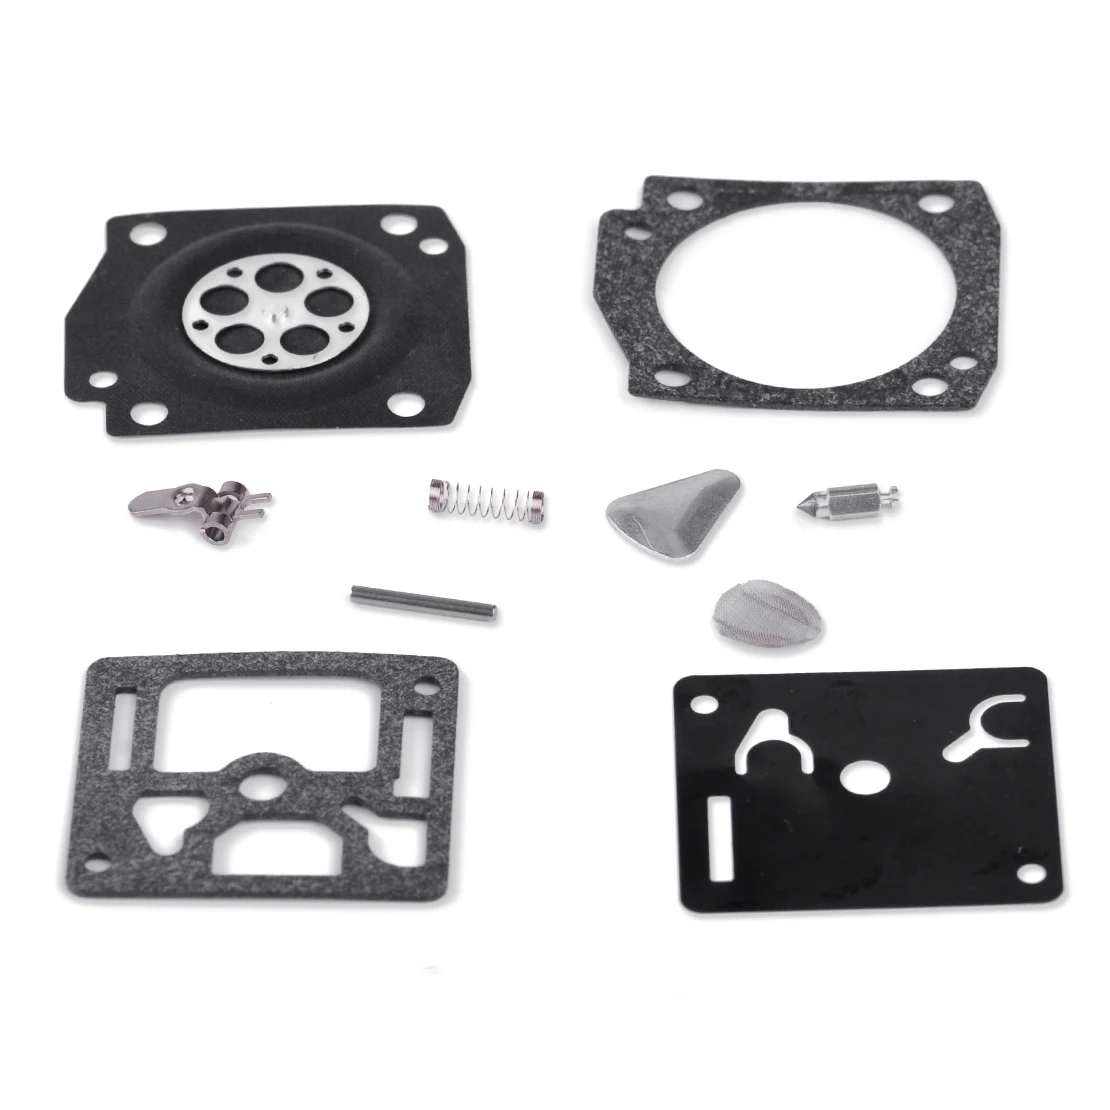 

LETAOSK Carburetor Carb Rebuild Repair Kit Fit for Stihl 034 044 036 MS340 MS360 Chainsaw